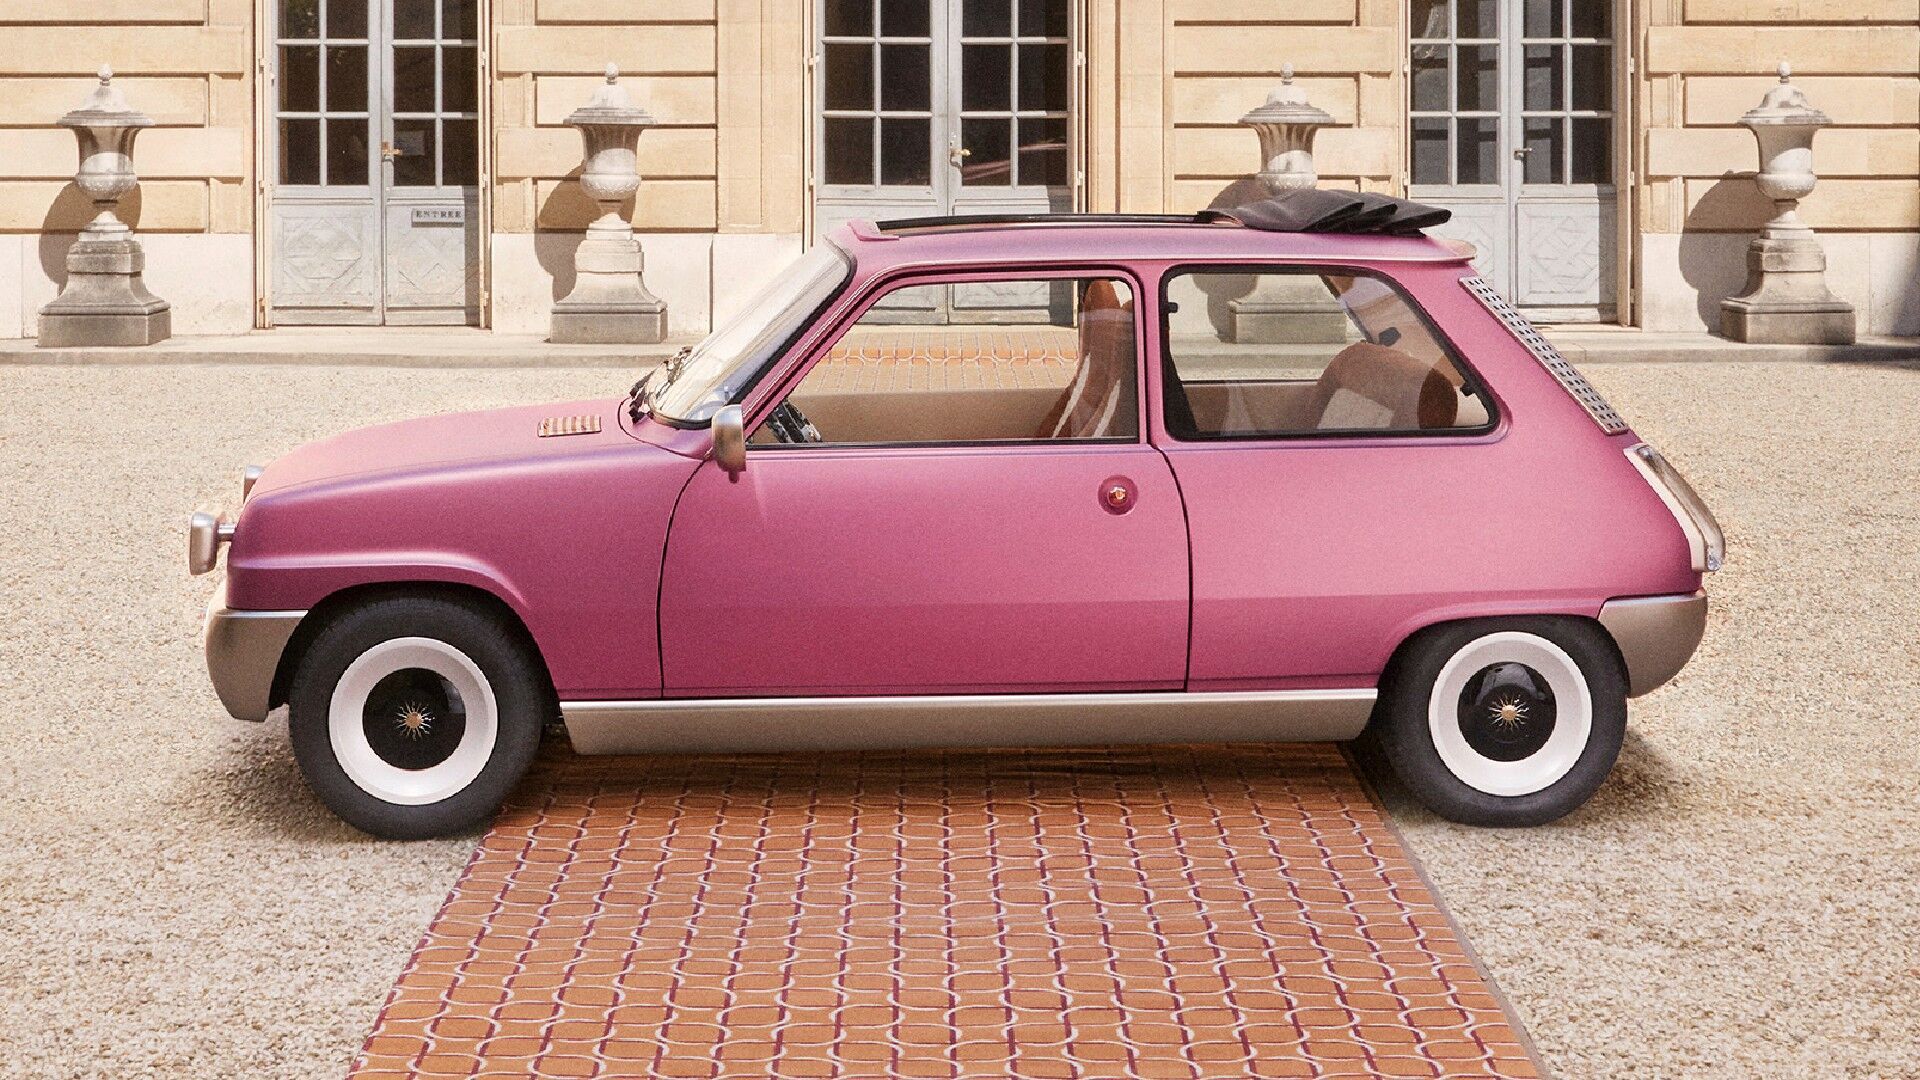 Основна частина кузова пофарбована рожевою фарбою із золотими пігментами та матовим лаком у поєднанні із золотими акцентами в нижній частині автомобіля